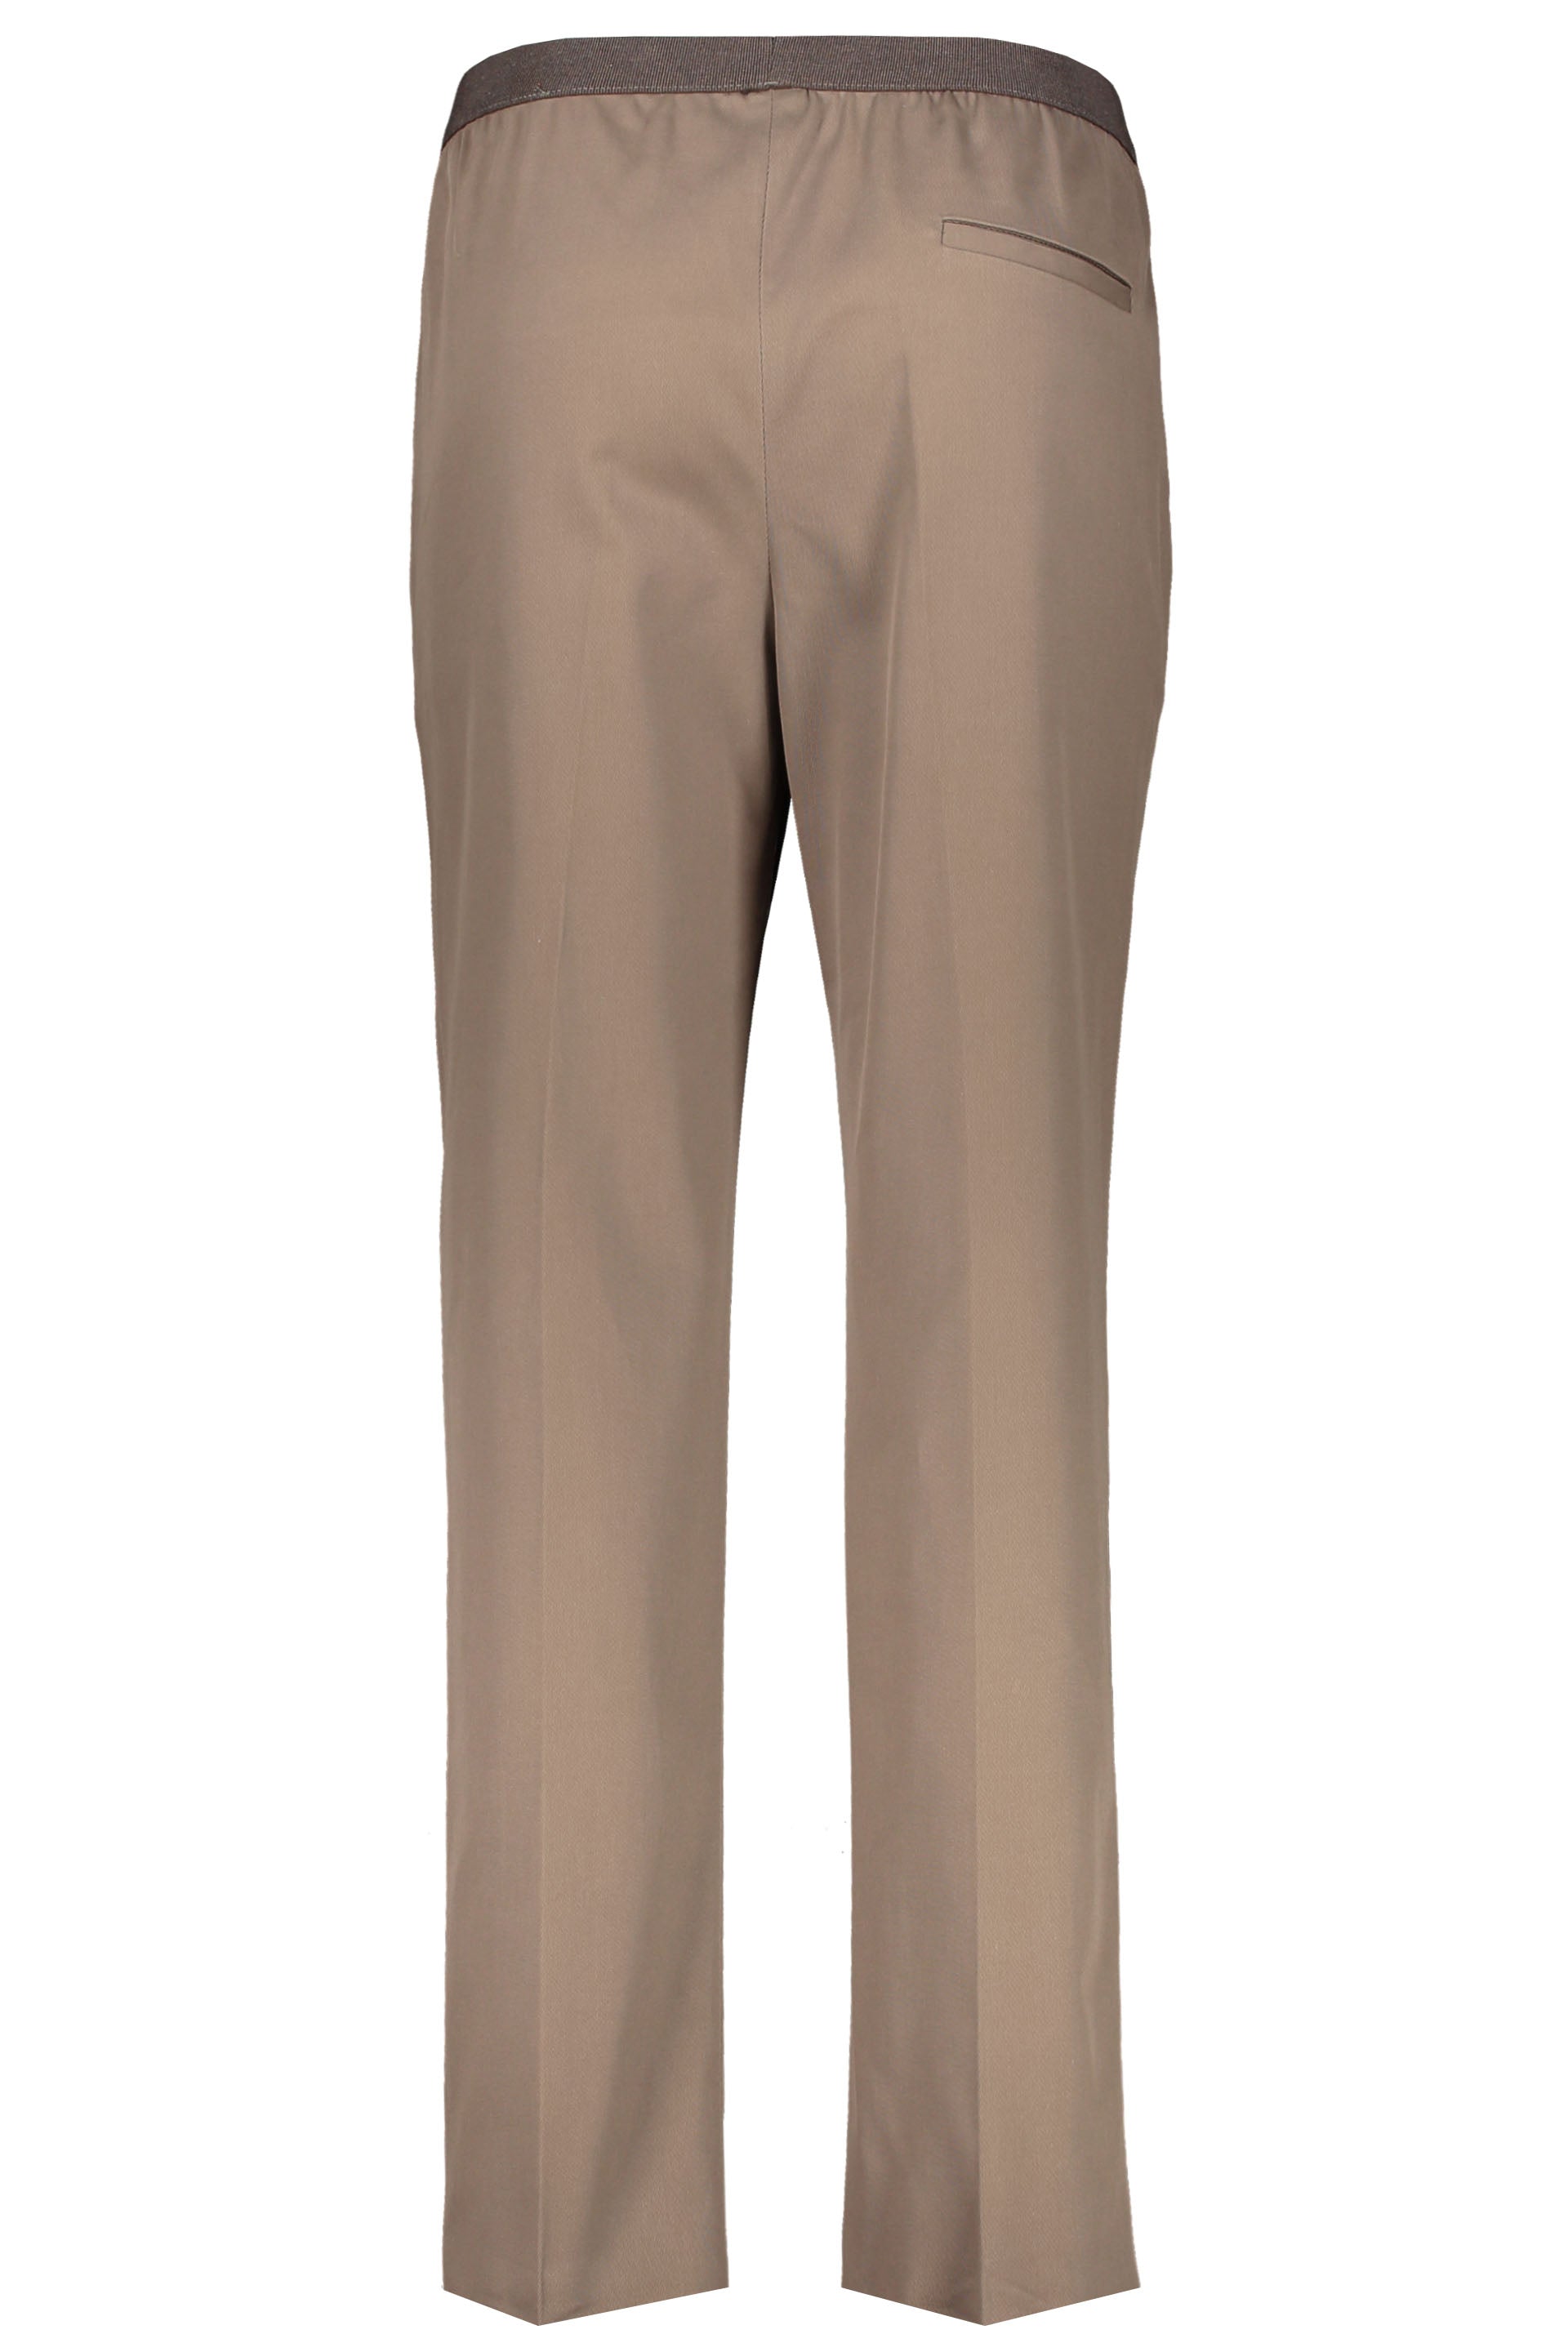 Agnona-OUTLET-SALE-Cotton-trousers-Hosen-ARCHIVE-COLLECTION-2.jpg